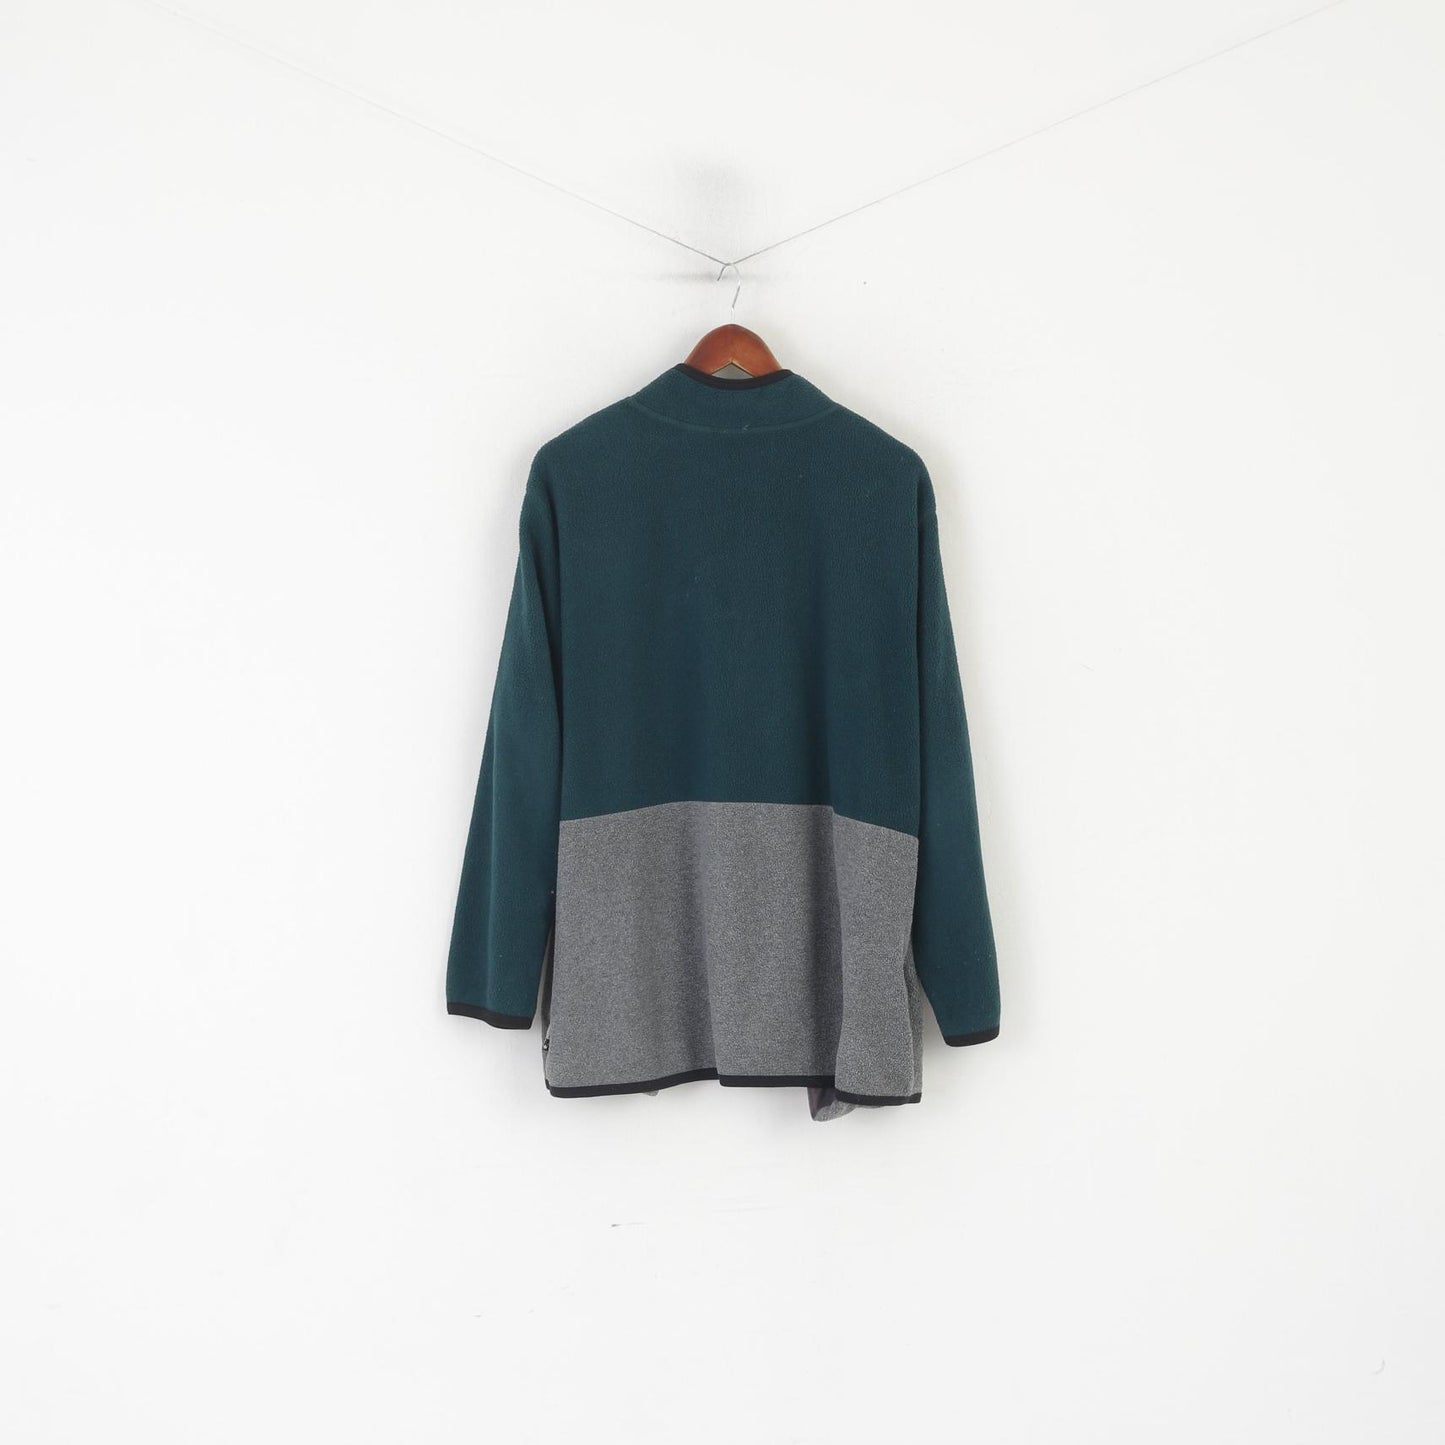 Vintage Women 18 20 Fleece Top Green Tweety Zip Neck Pullover Sweatshirt